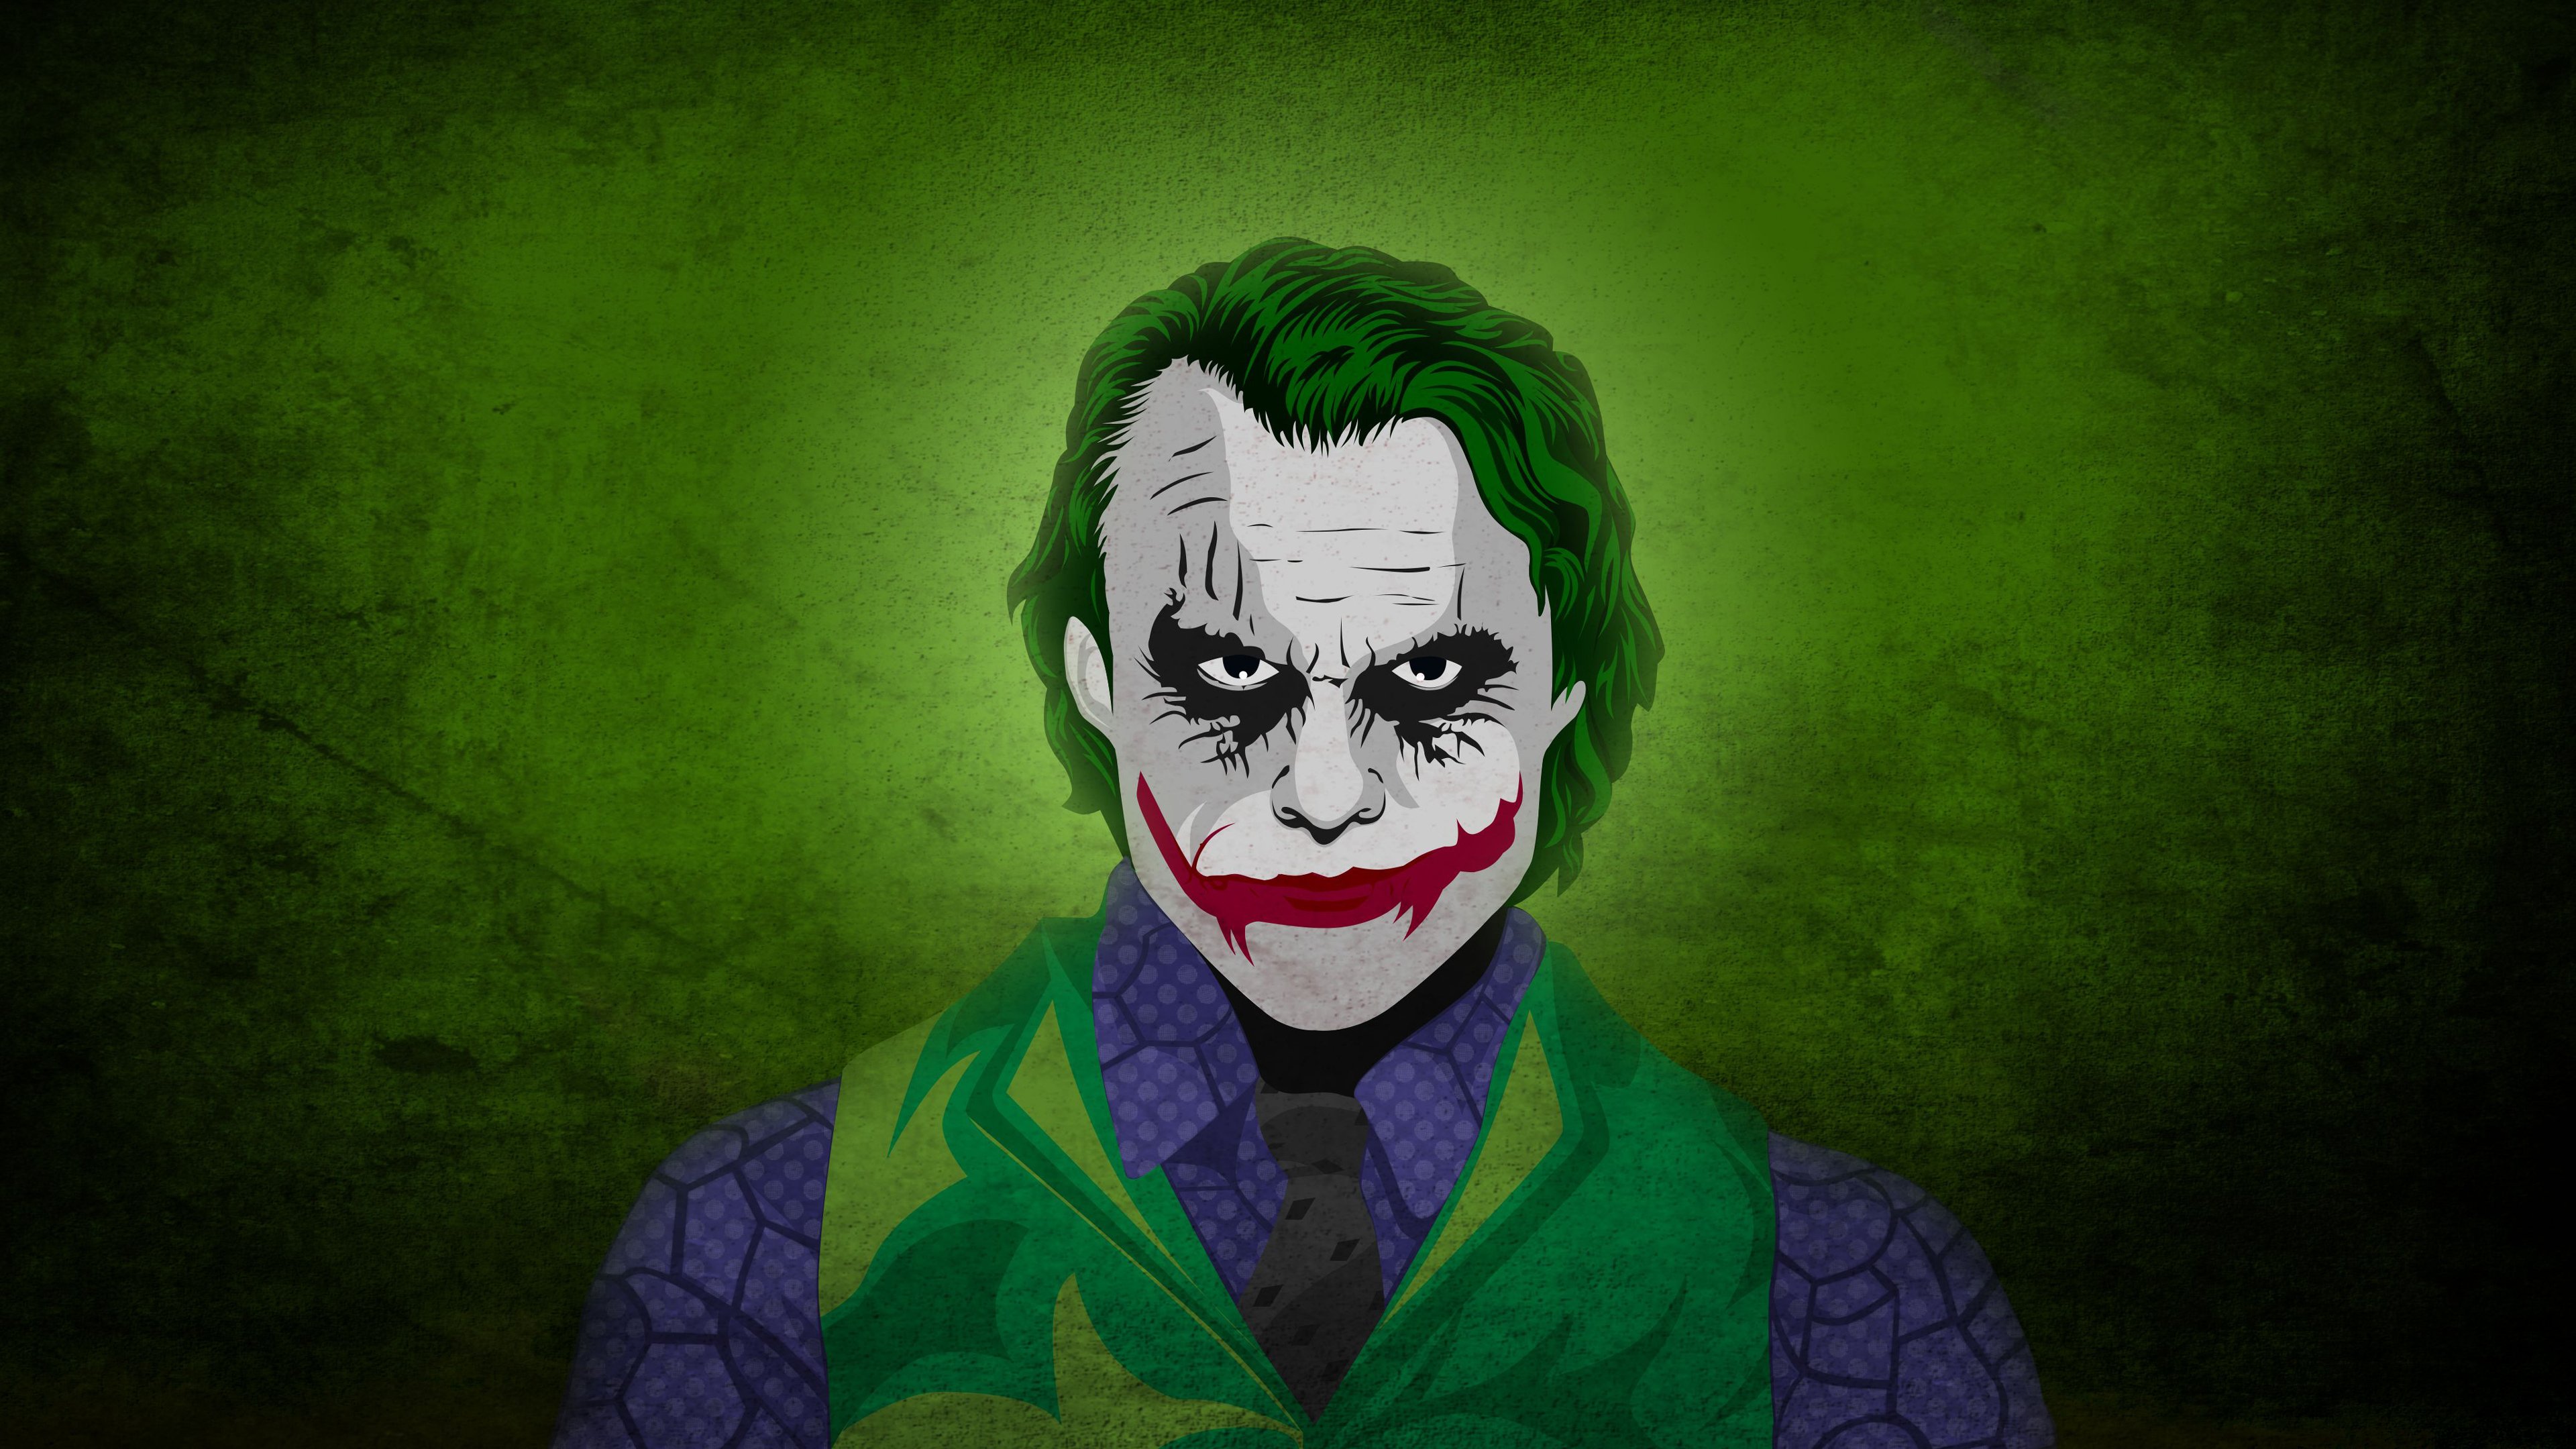 Heath Ledger as The Joker Wallpaper 4k Ultra HD ID:6175